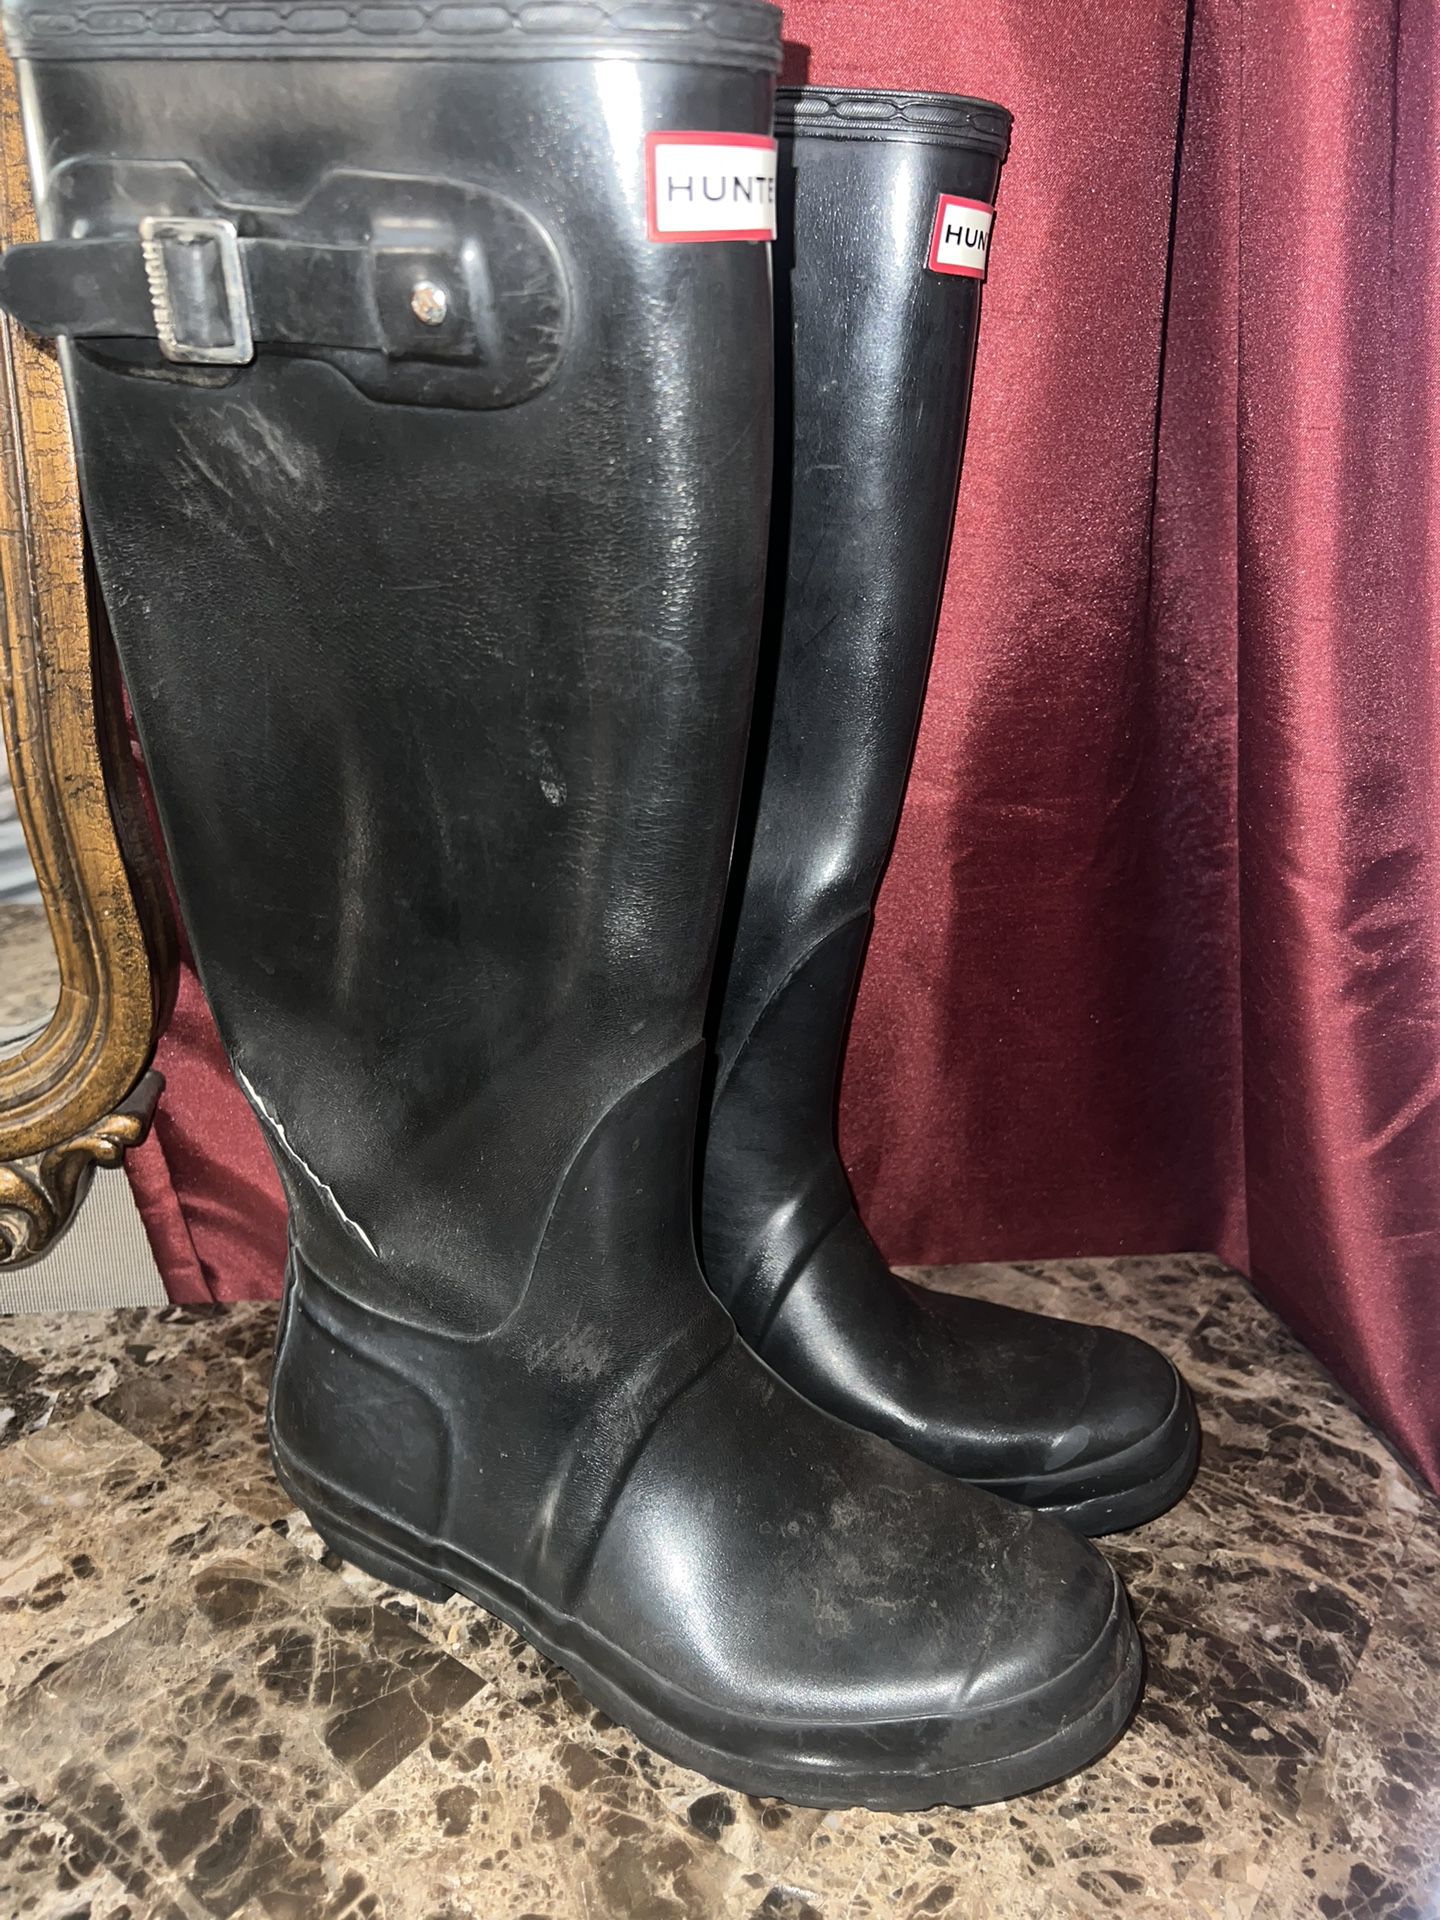 Ladies Womens sz 9 black tall Hunter rain boots well worn - see pics for tears